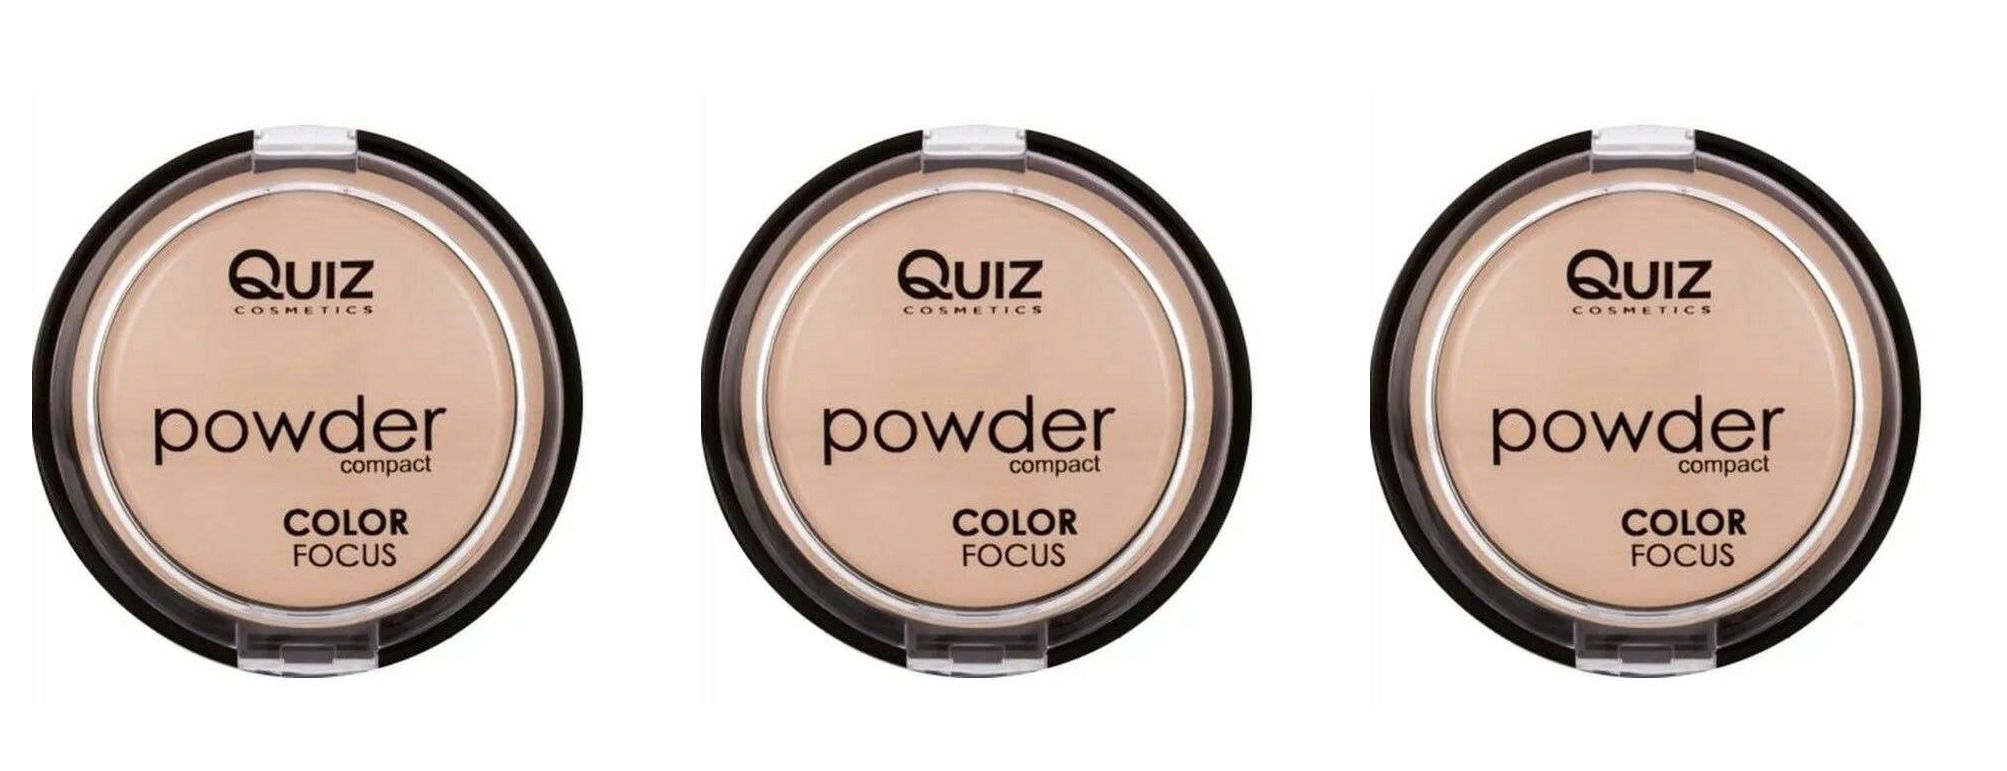 Пудра компактная Quiz cosmetics, Powder Focus, Color 60, 3 шт пудра активатор для декапирования color convert powder